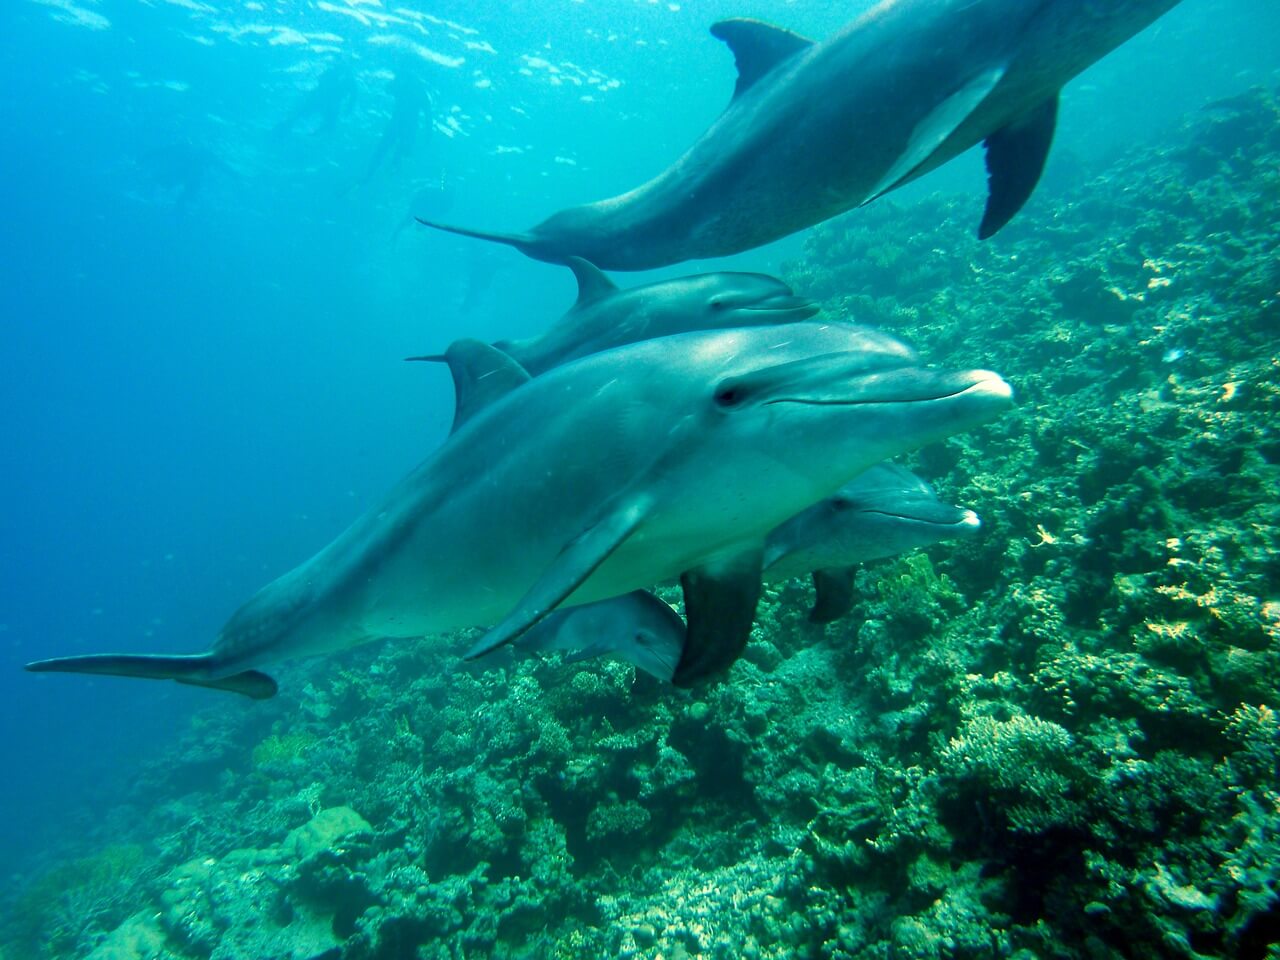 Golfinhos no fundo do mar.